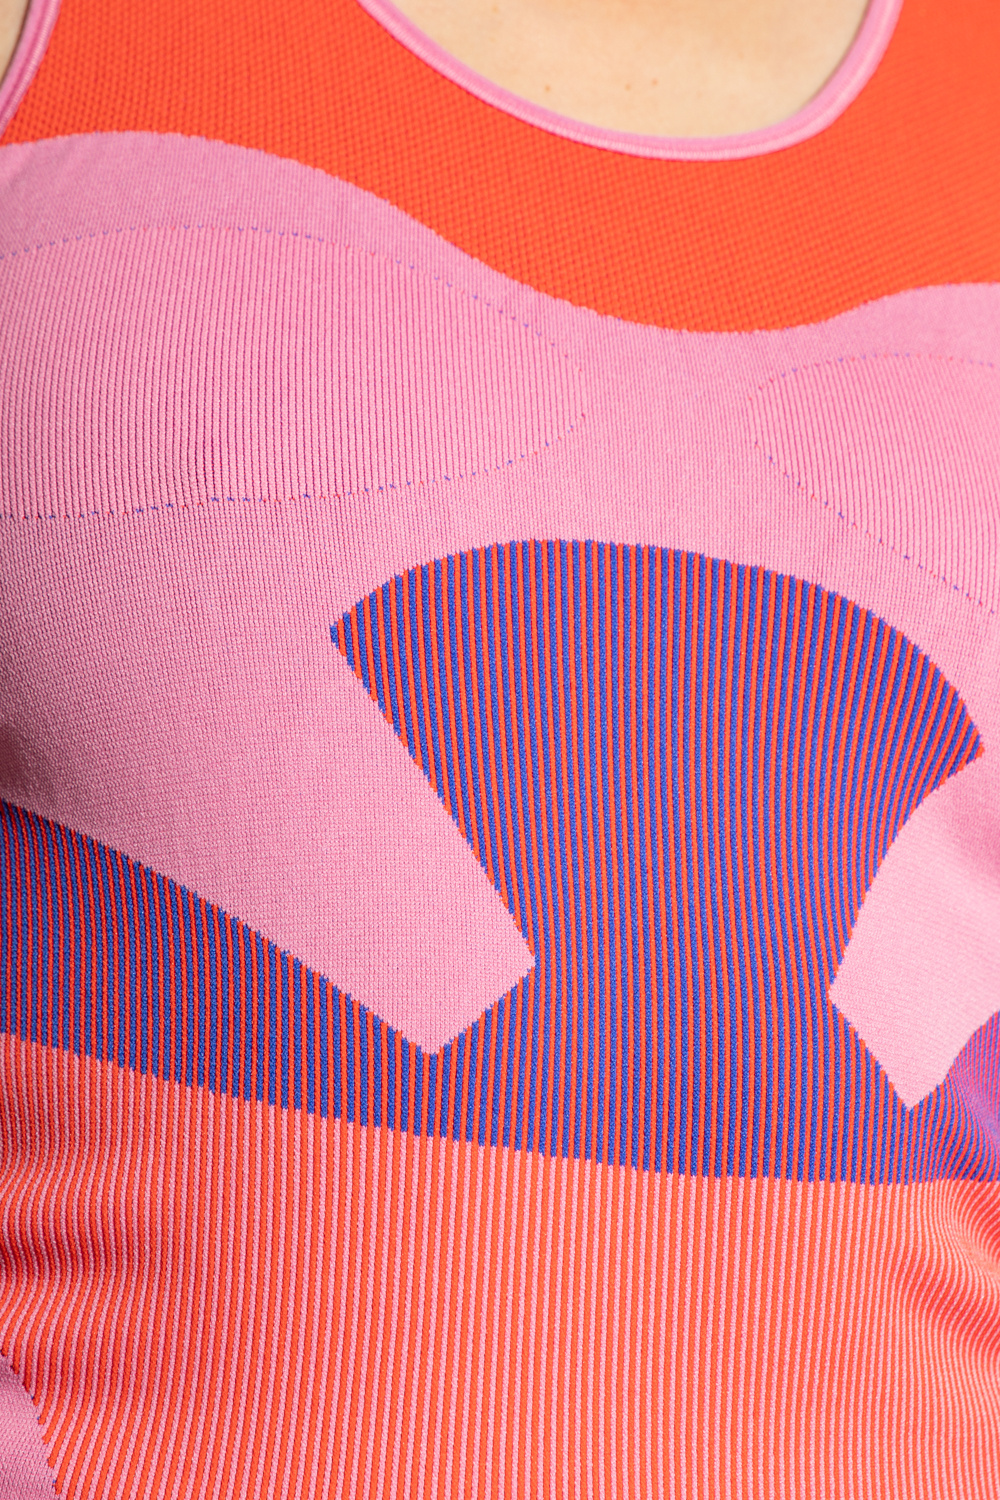 ADIDAS by Stella McCartney adidas trimm star womens soccer jersey